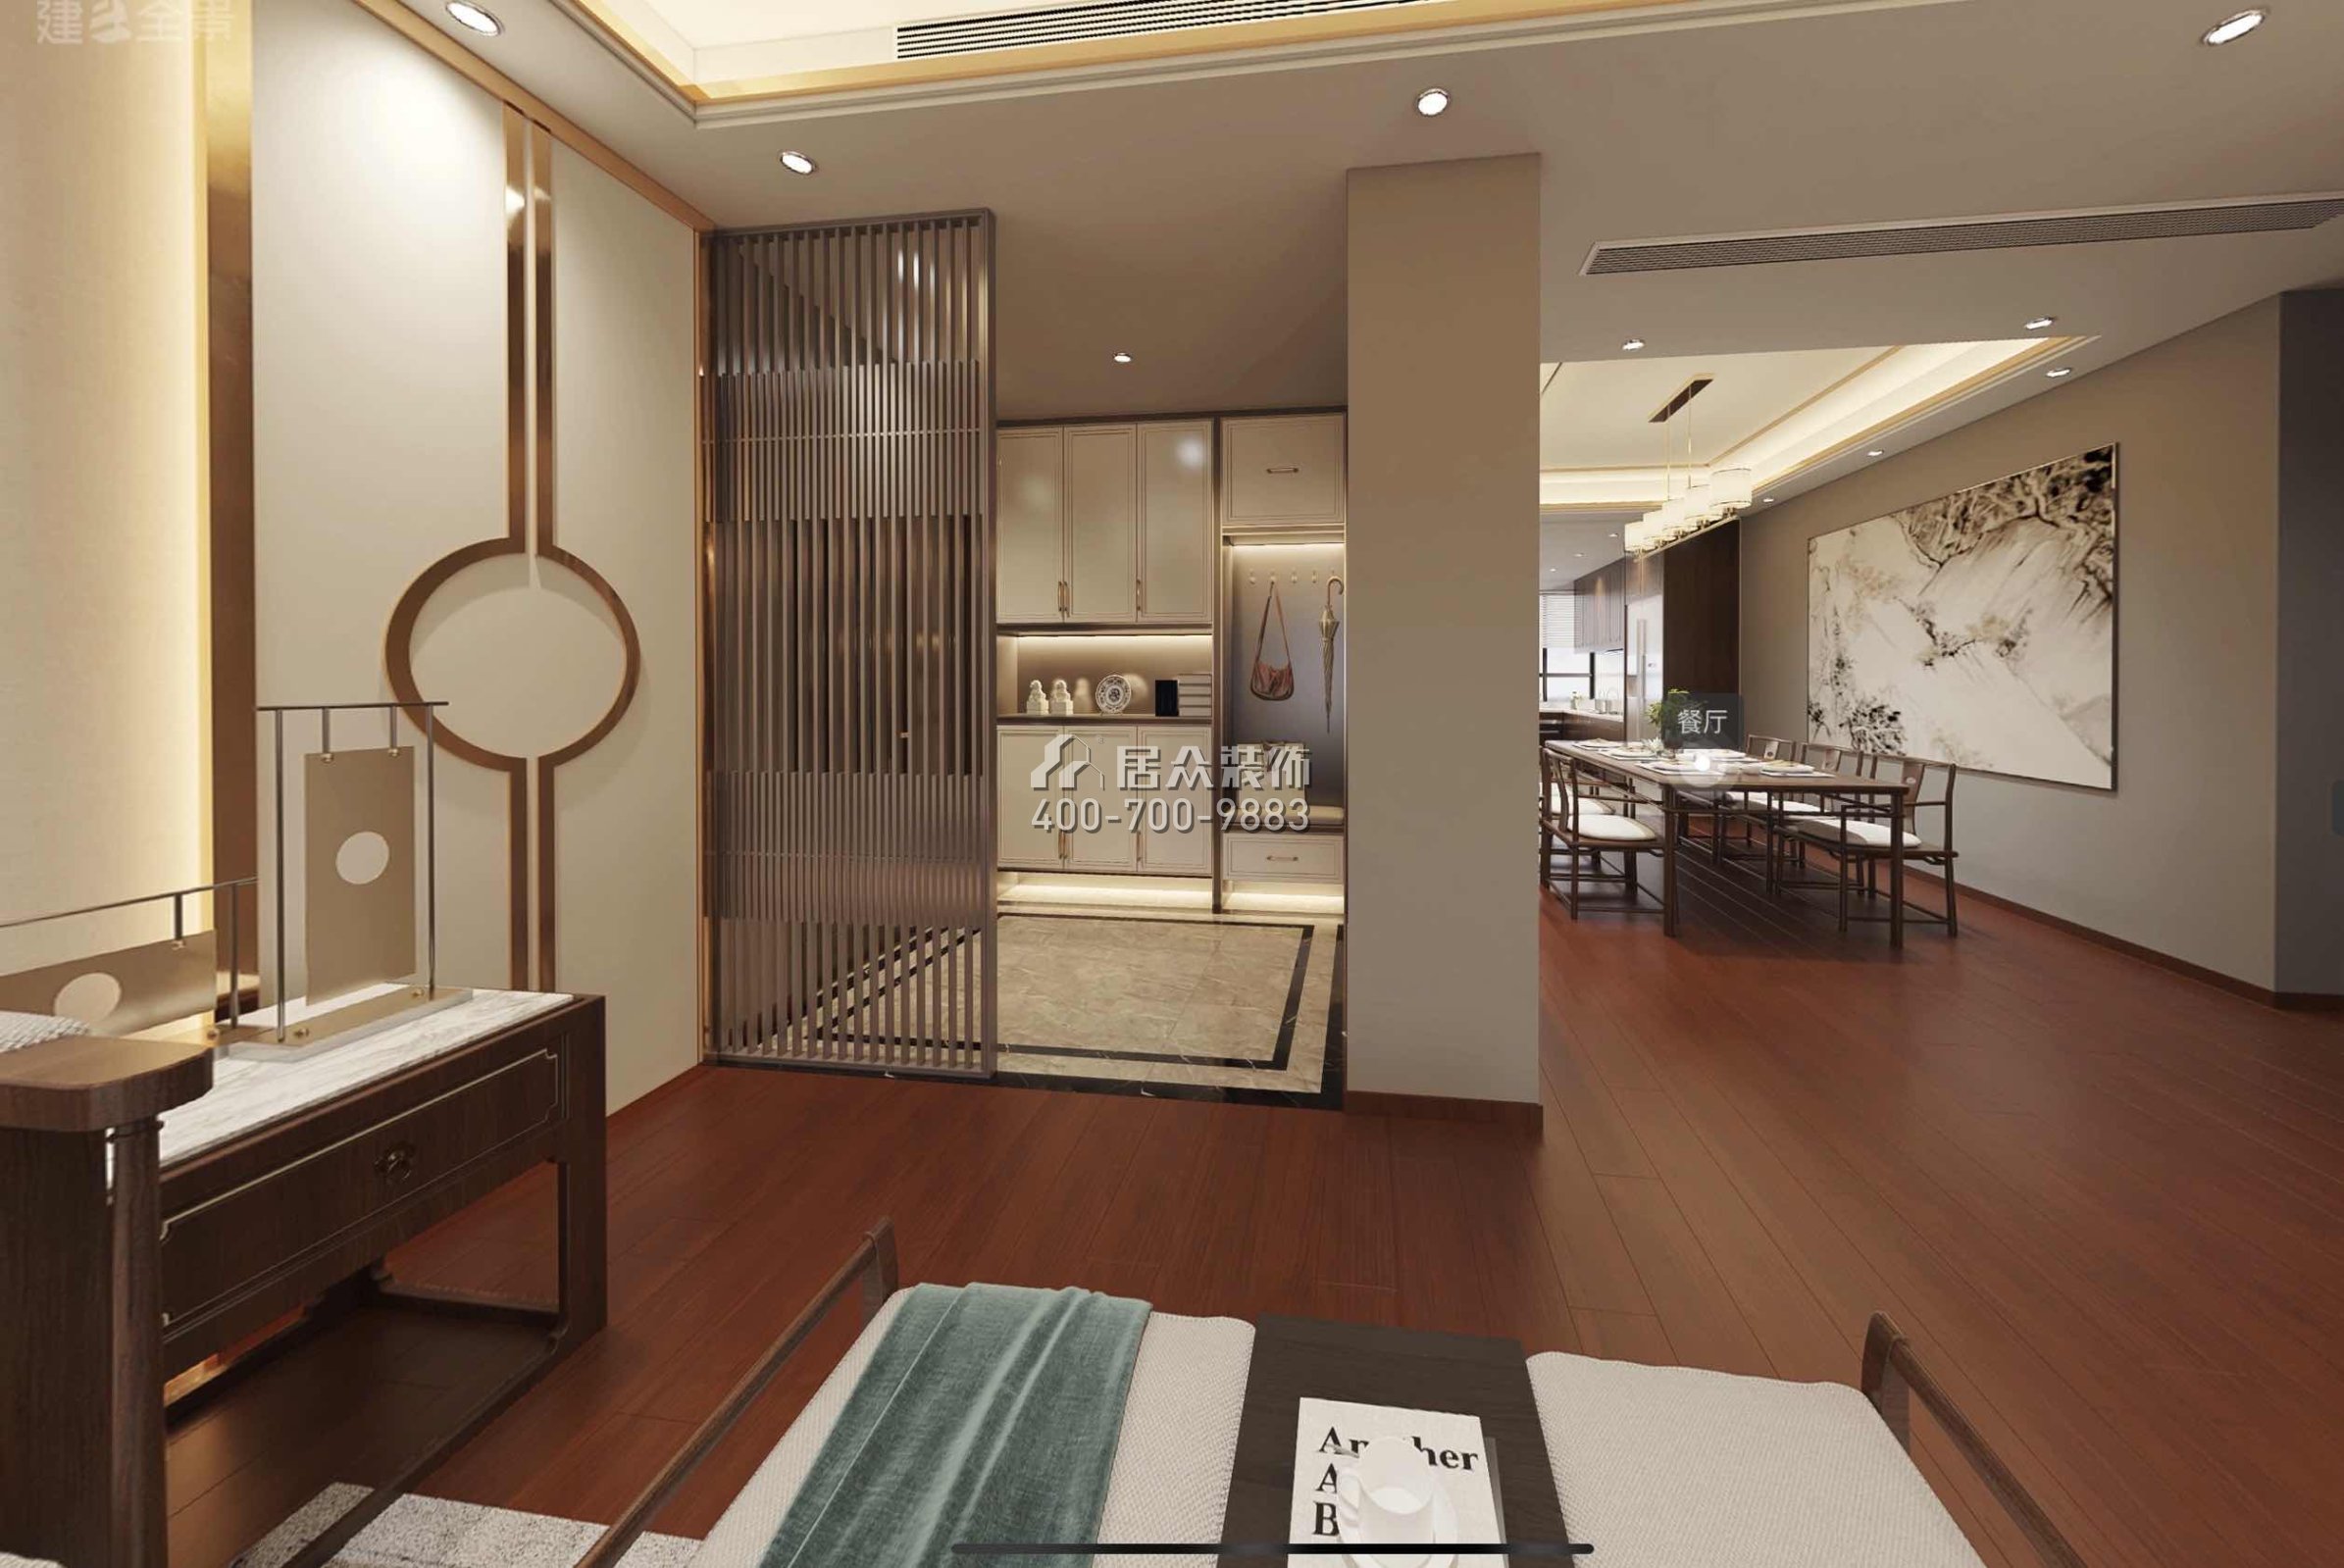 格力广场三期216平方米中式风格平层户型客厅（中国）科技有限公司官网效果图